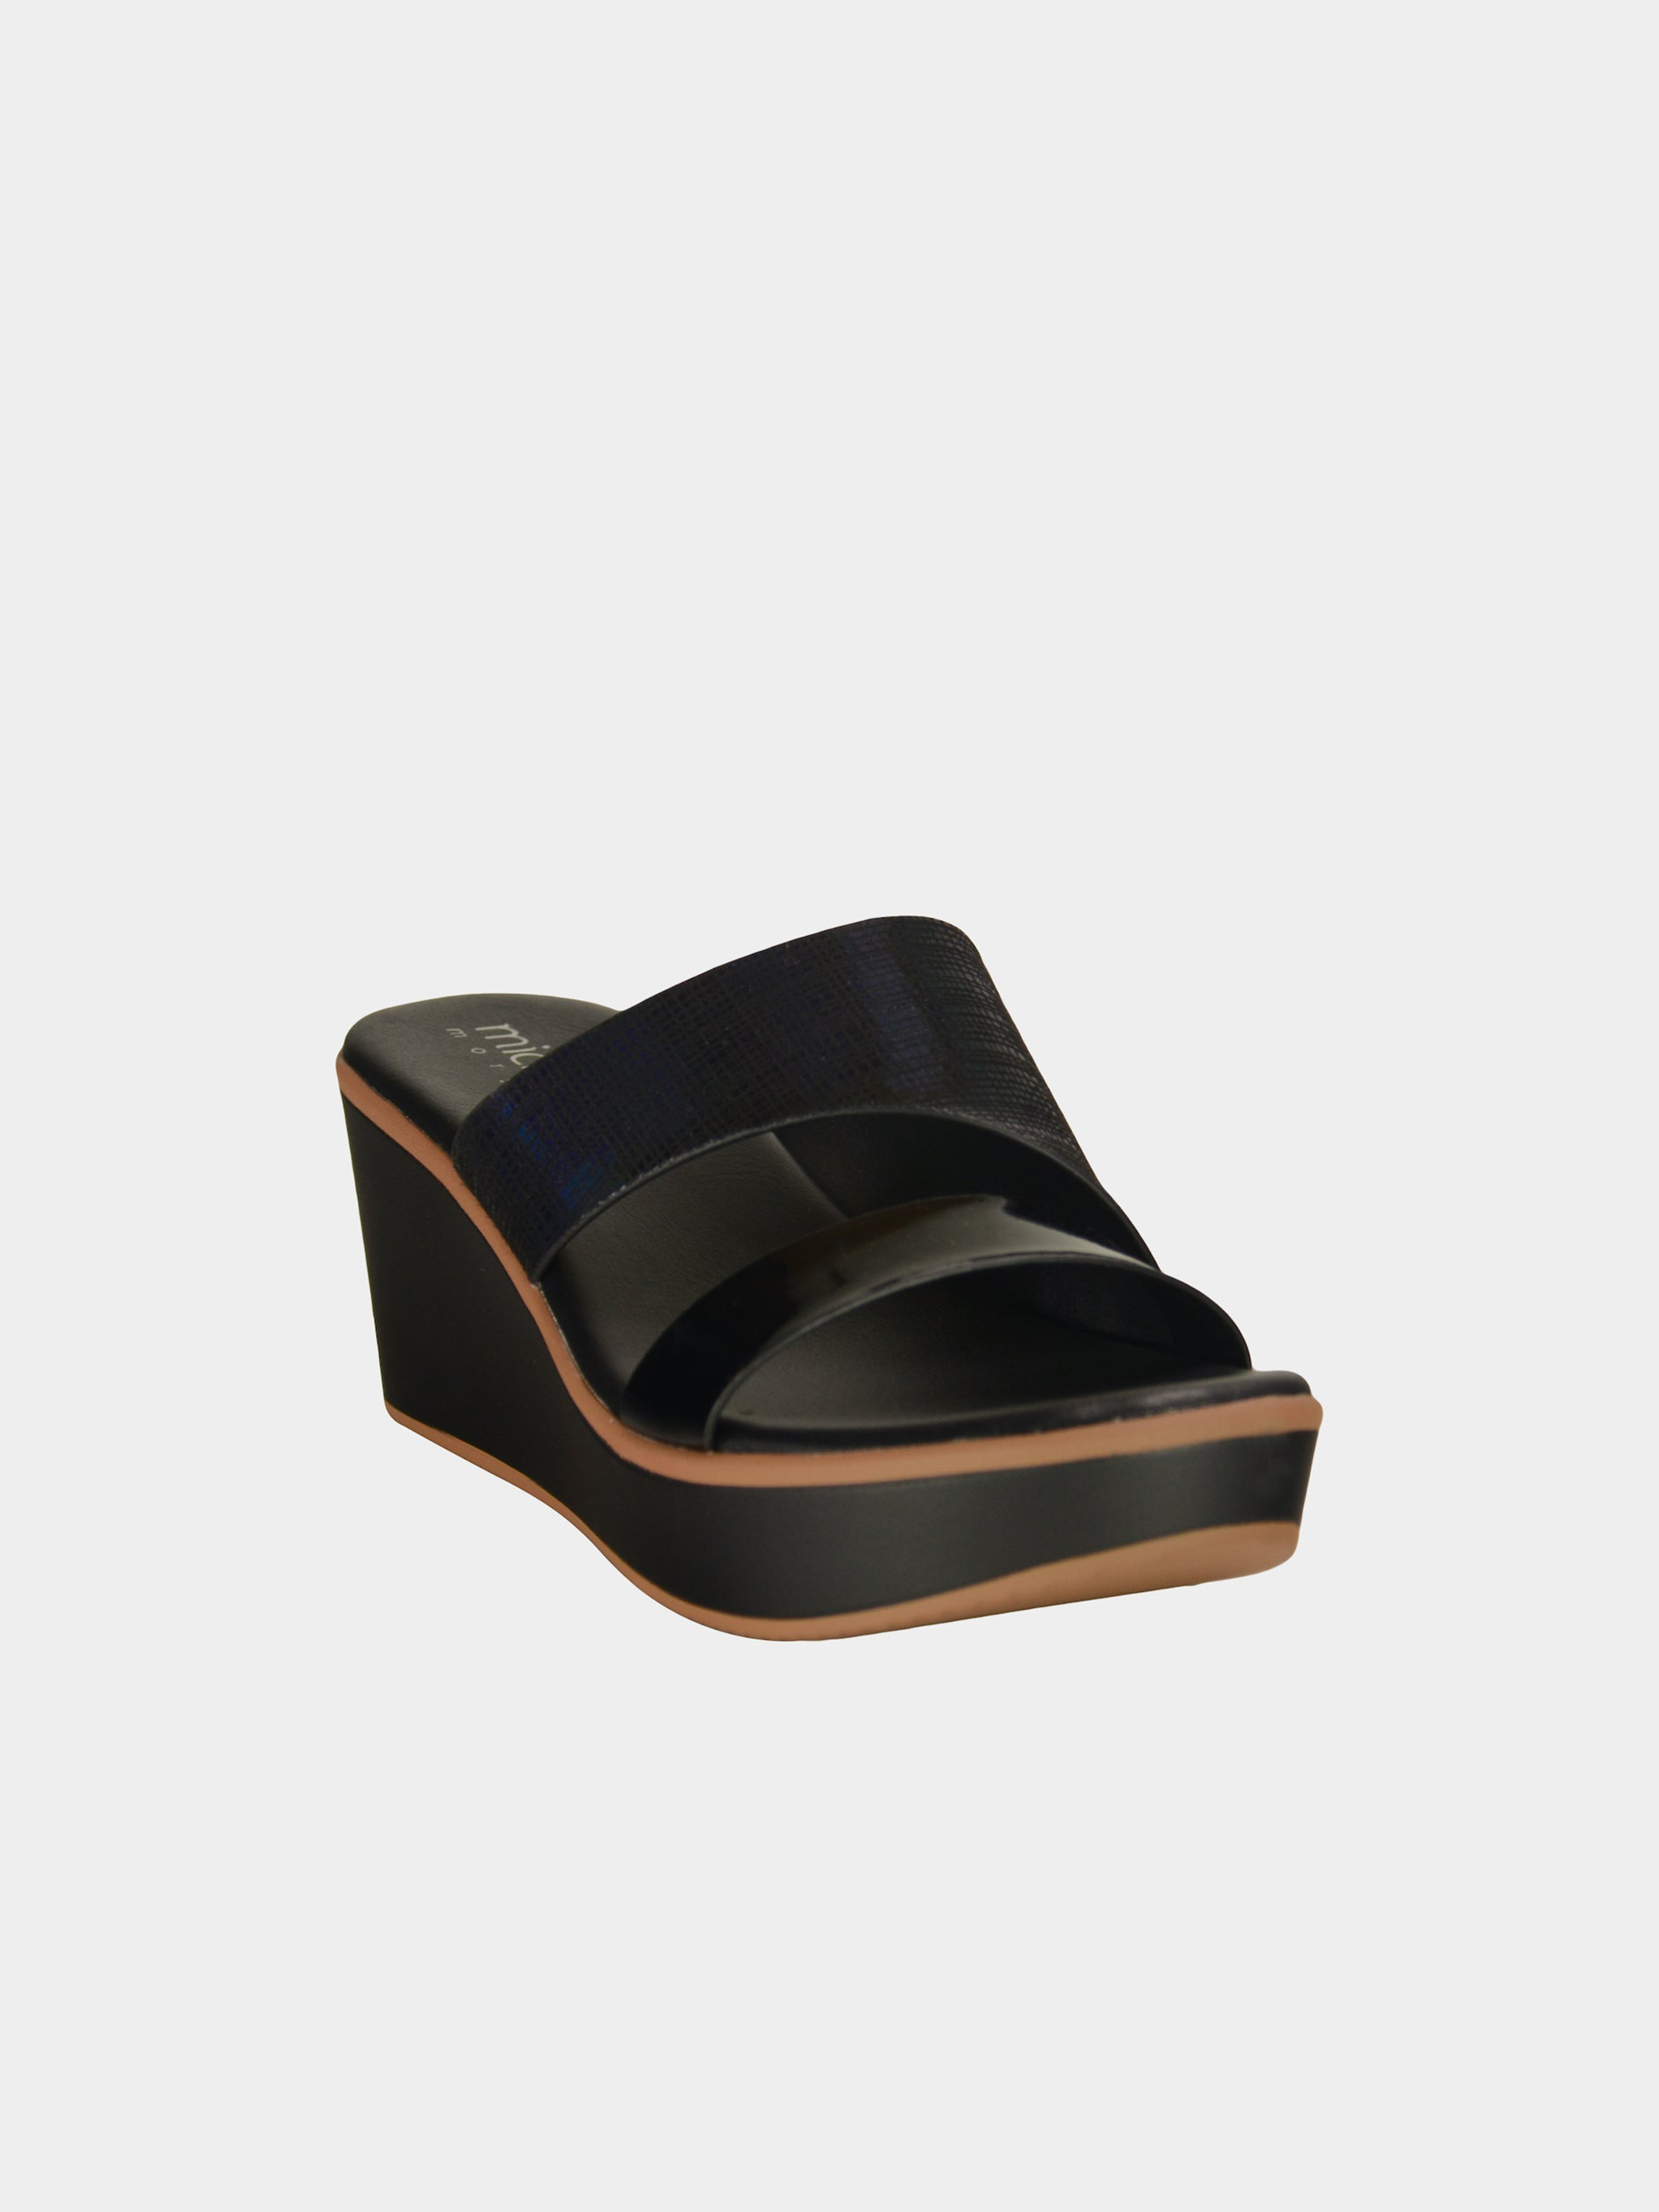 Michelle Morgan 914RJ28B Women's Wedge Sandals #color_Black